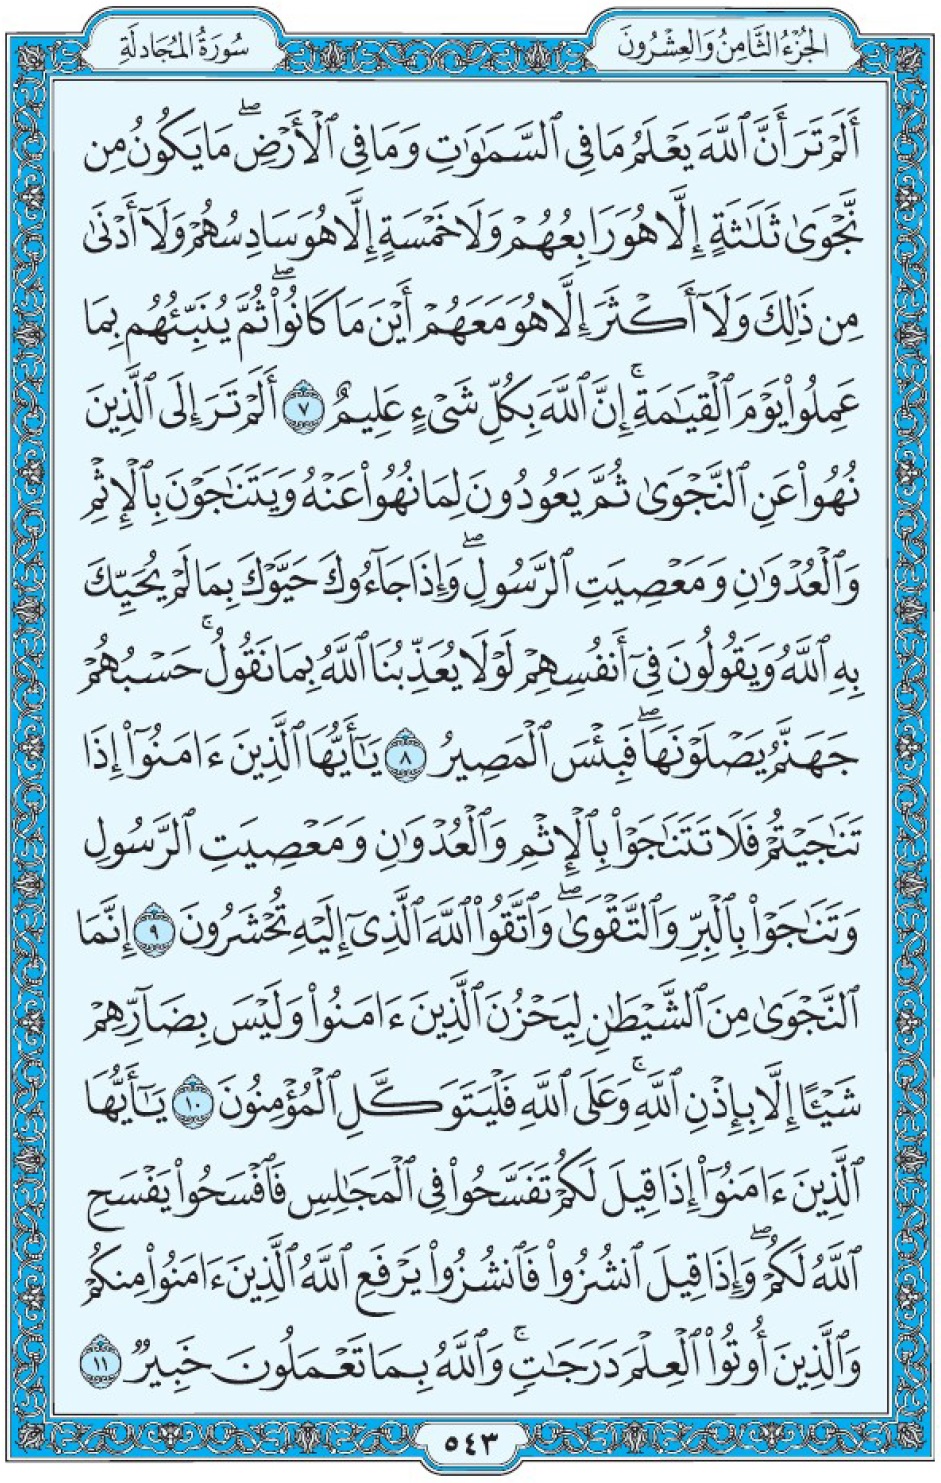 Коран Мединский мусхаф страница 543, сура аль-Муджядиля, аят 7-11